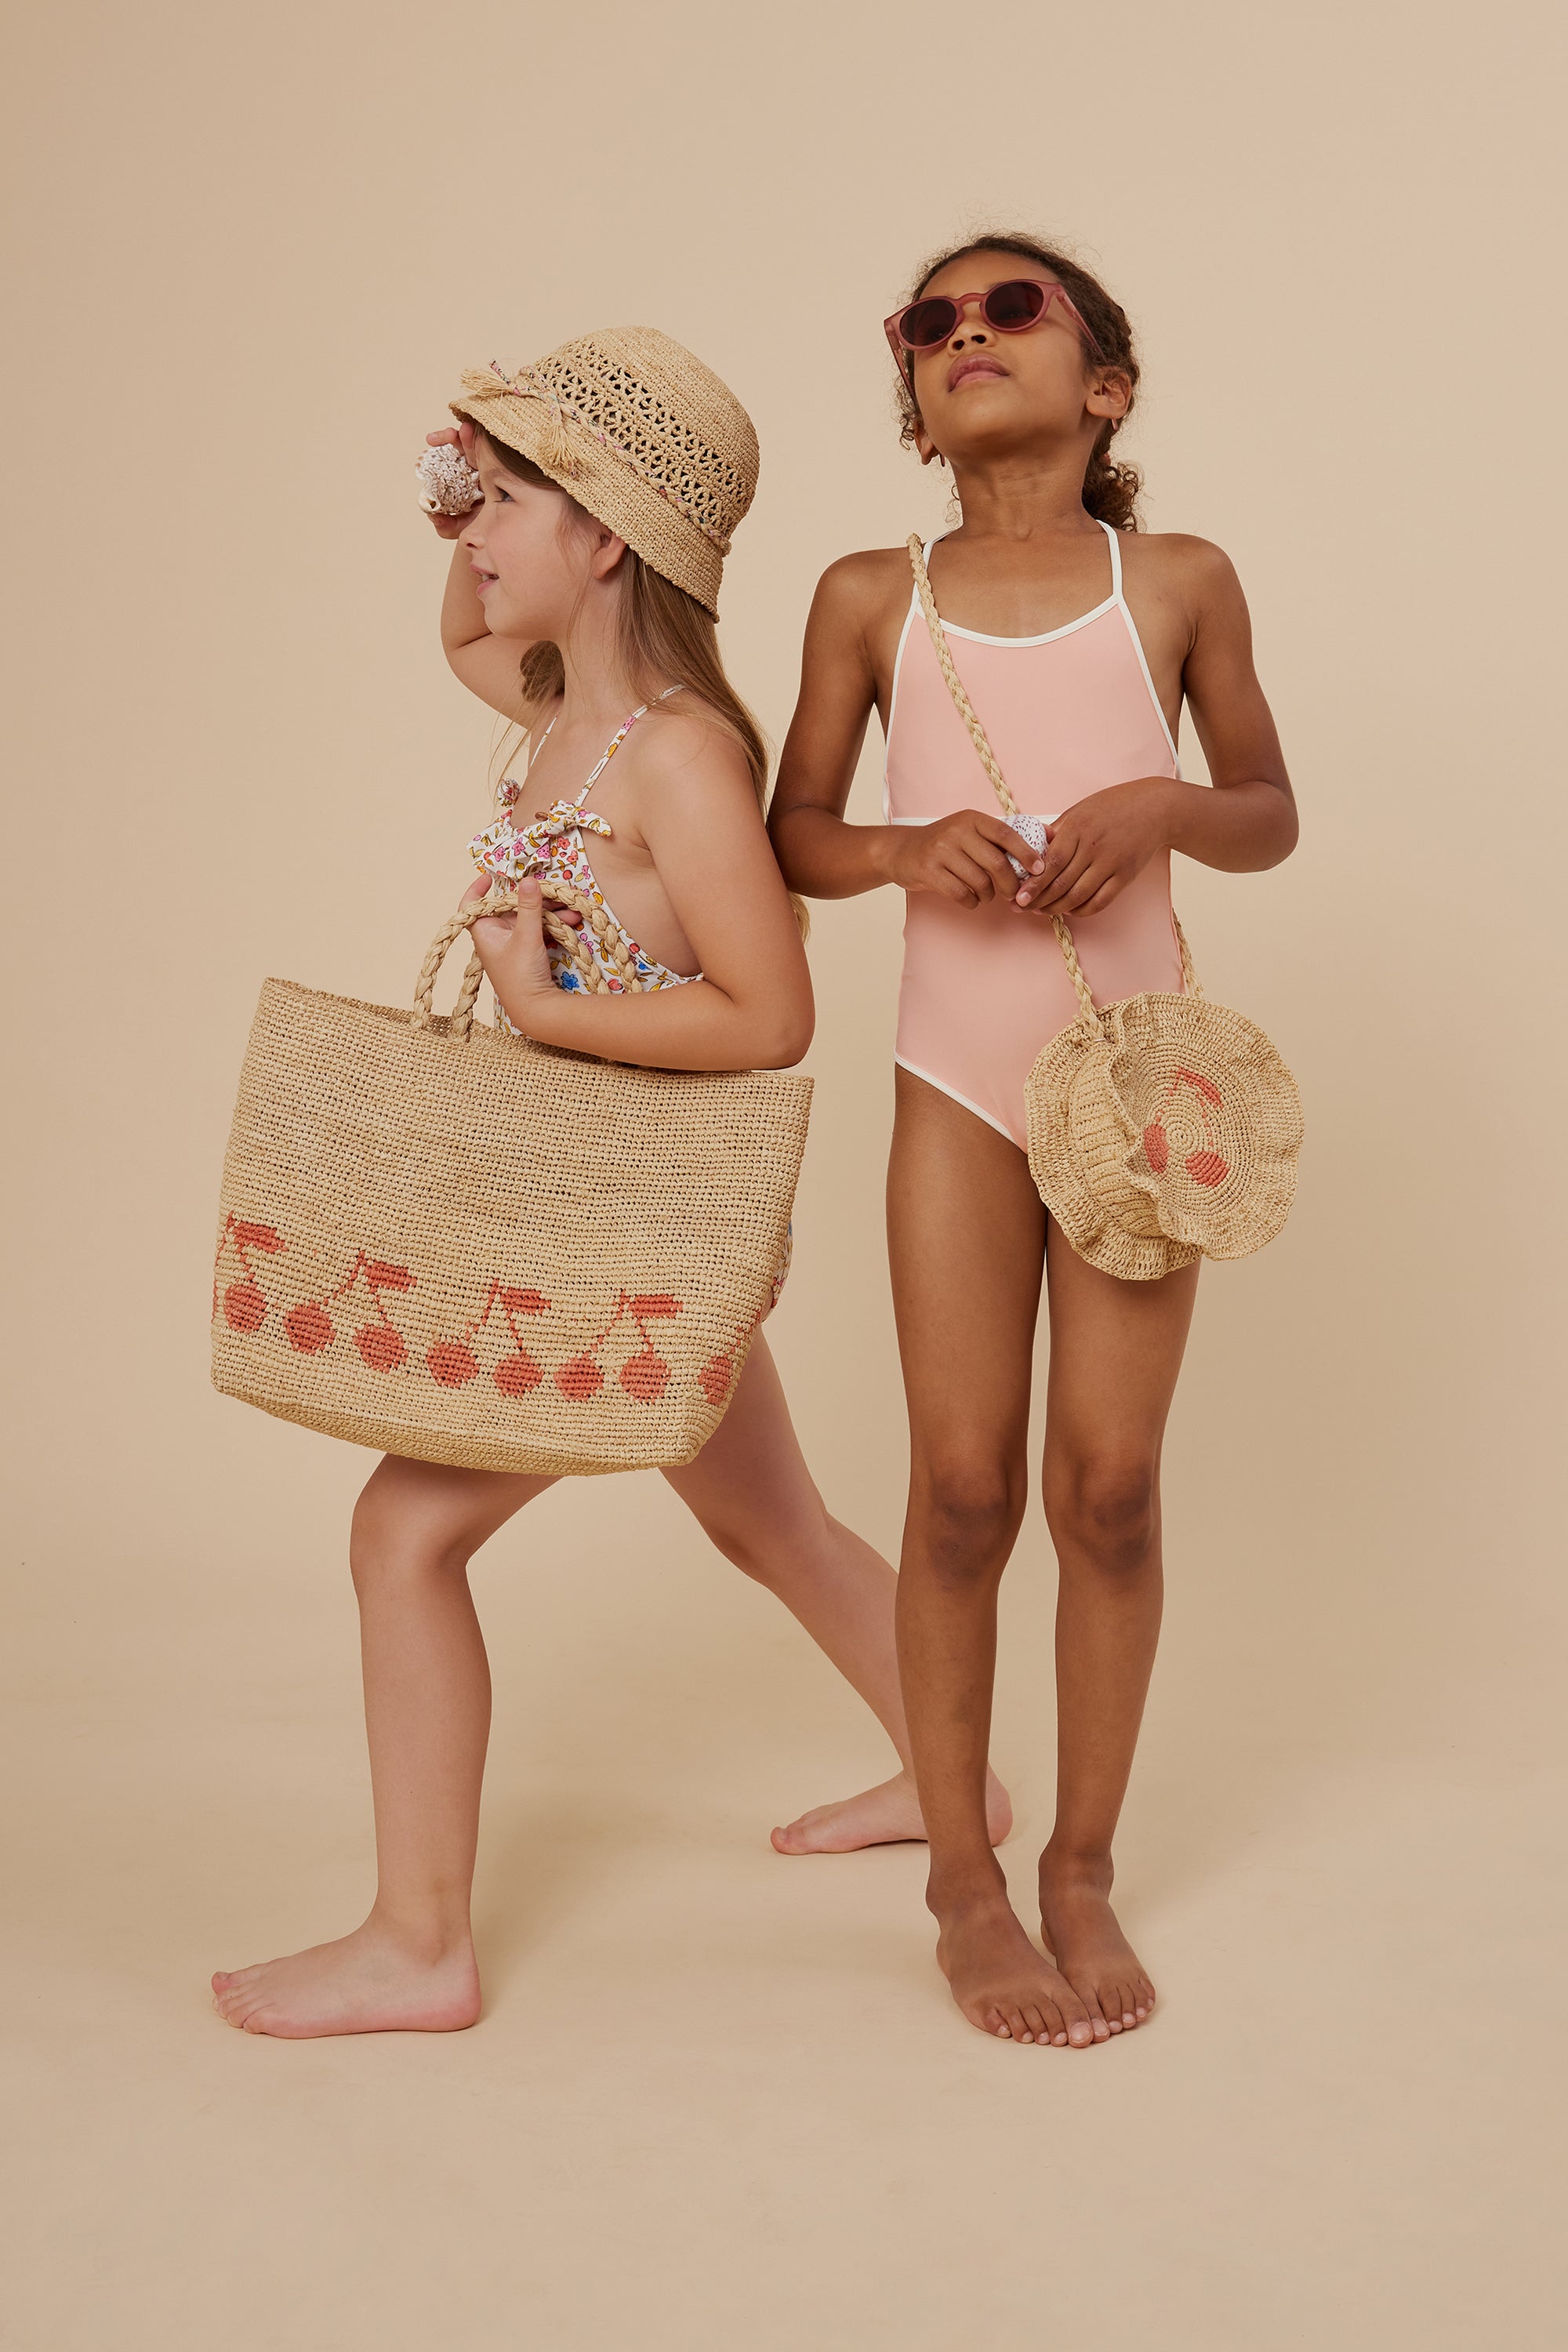 Children's clothing & birth gift ideas - Bonpoint